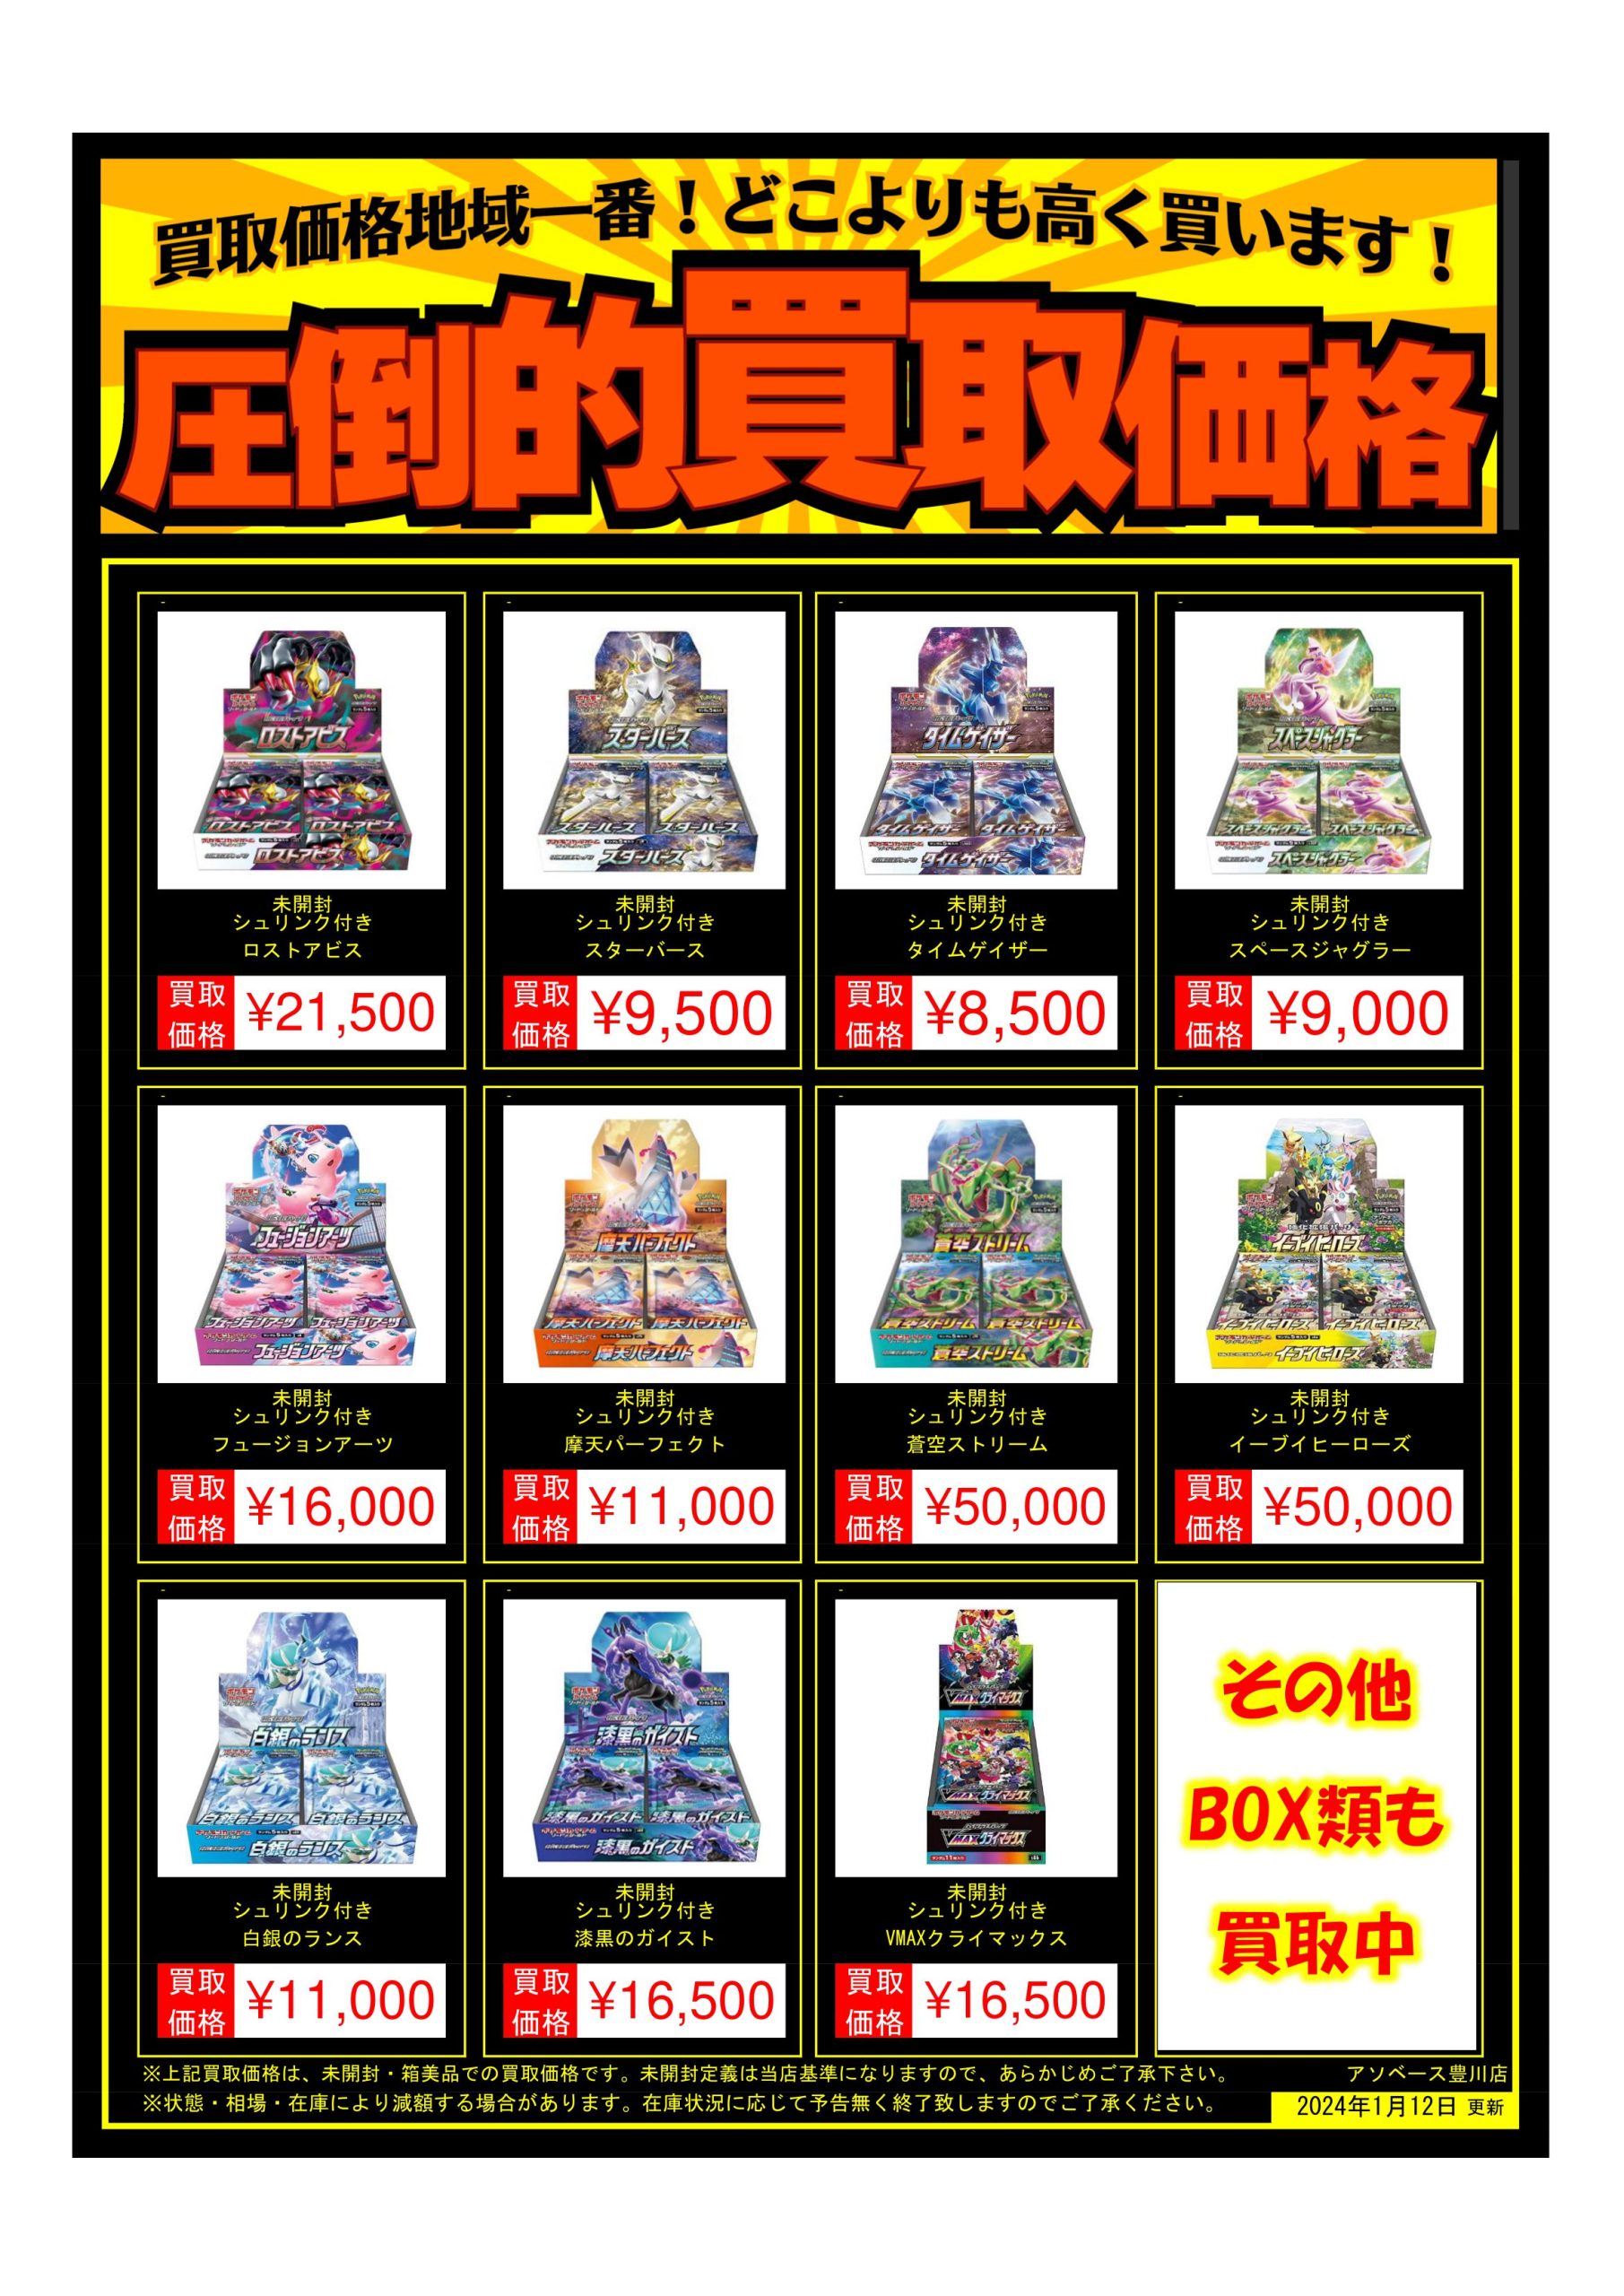 【豊川店】ポケモンカード未開封ボックス買取価格変更のお知らせ 